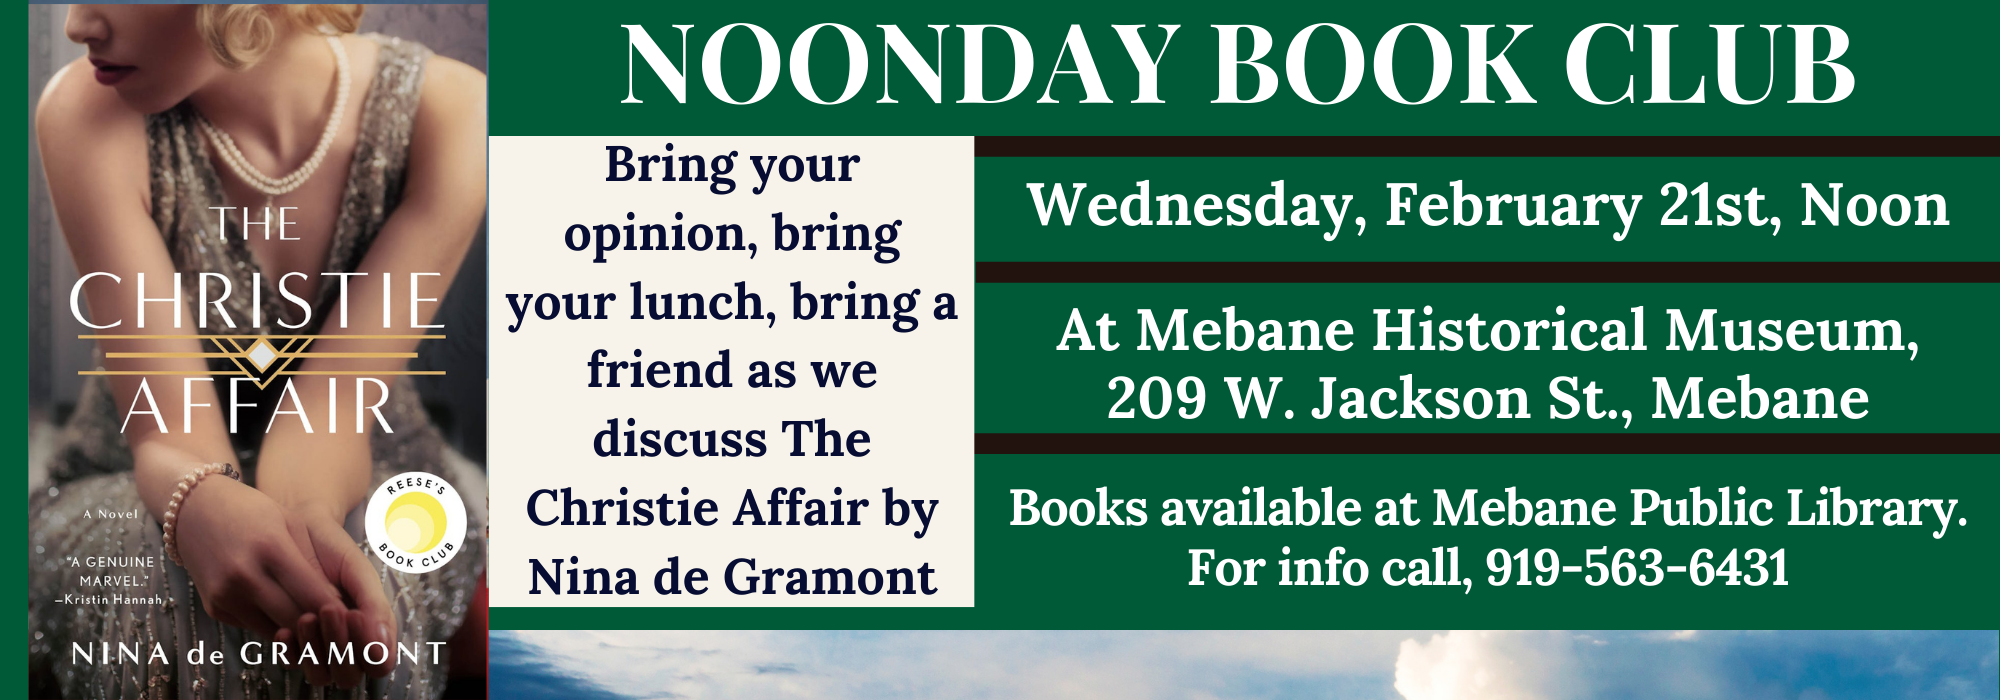 2.21 at Noon – Noonday Book Club at Mebane